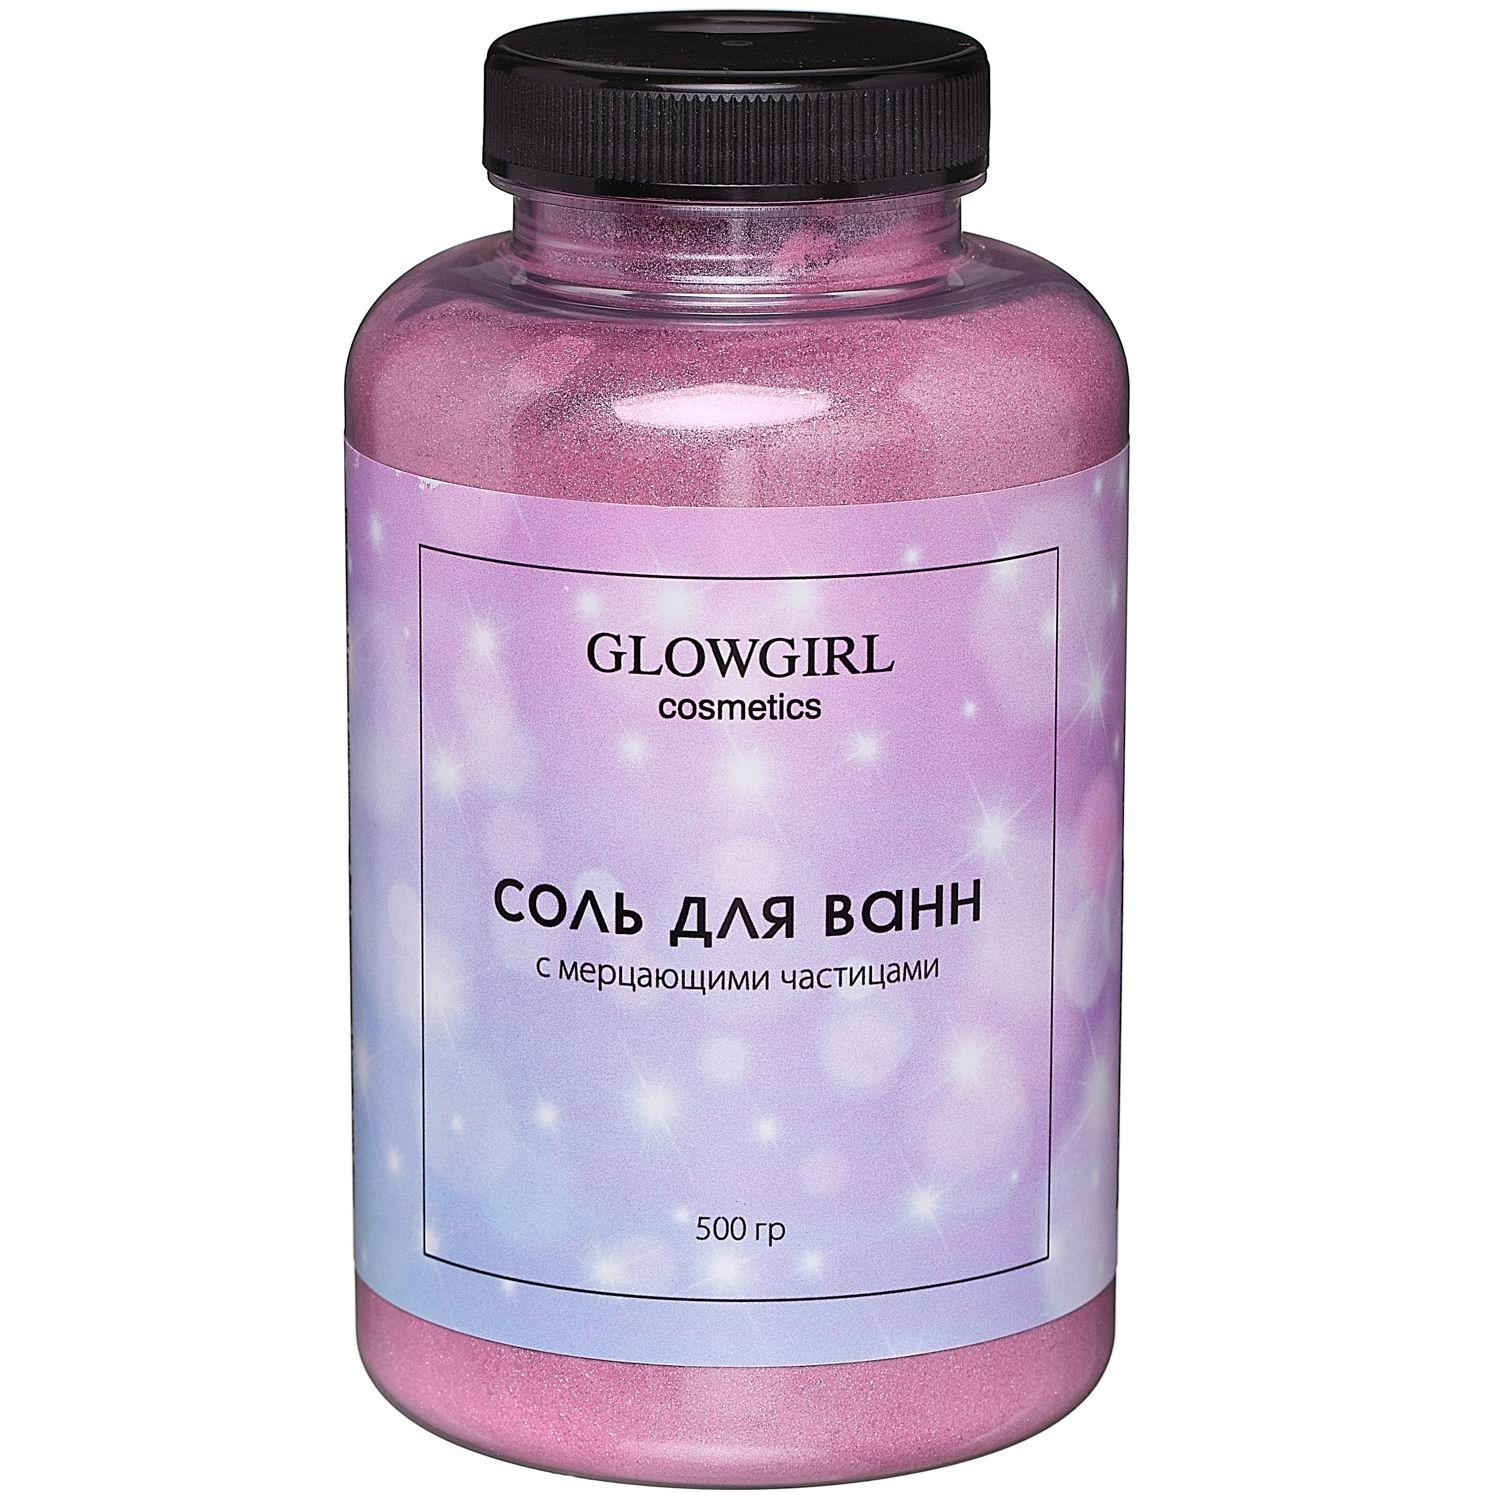 Соль для ванн Glowgirl розовый гранат 500г соль для ванн народные рецепты омолаживающая 500г